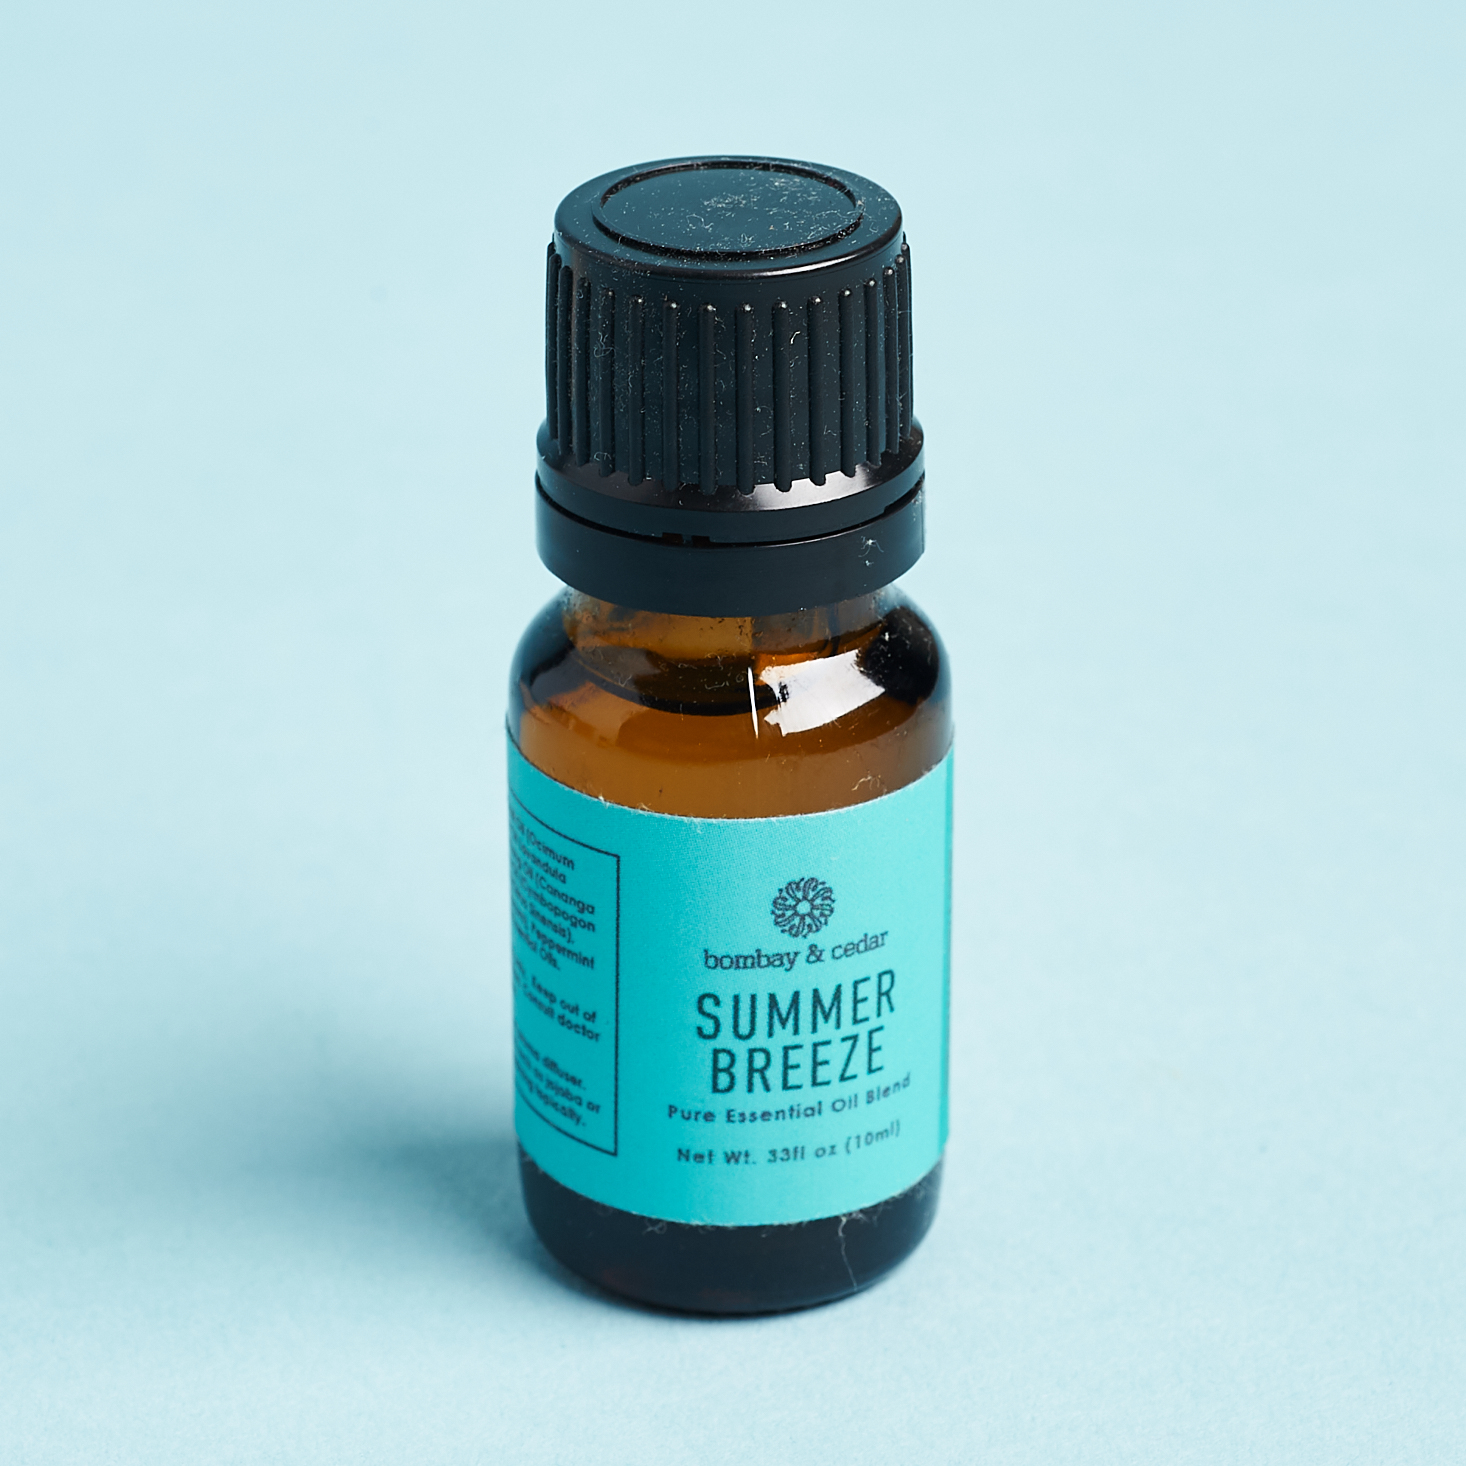 blue label summer breeze essential oil blend bottle